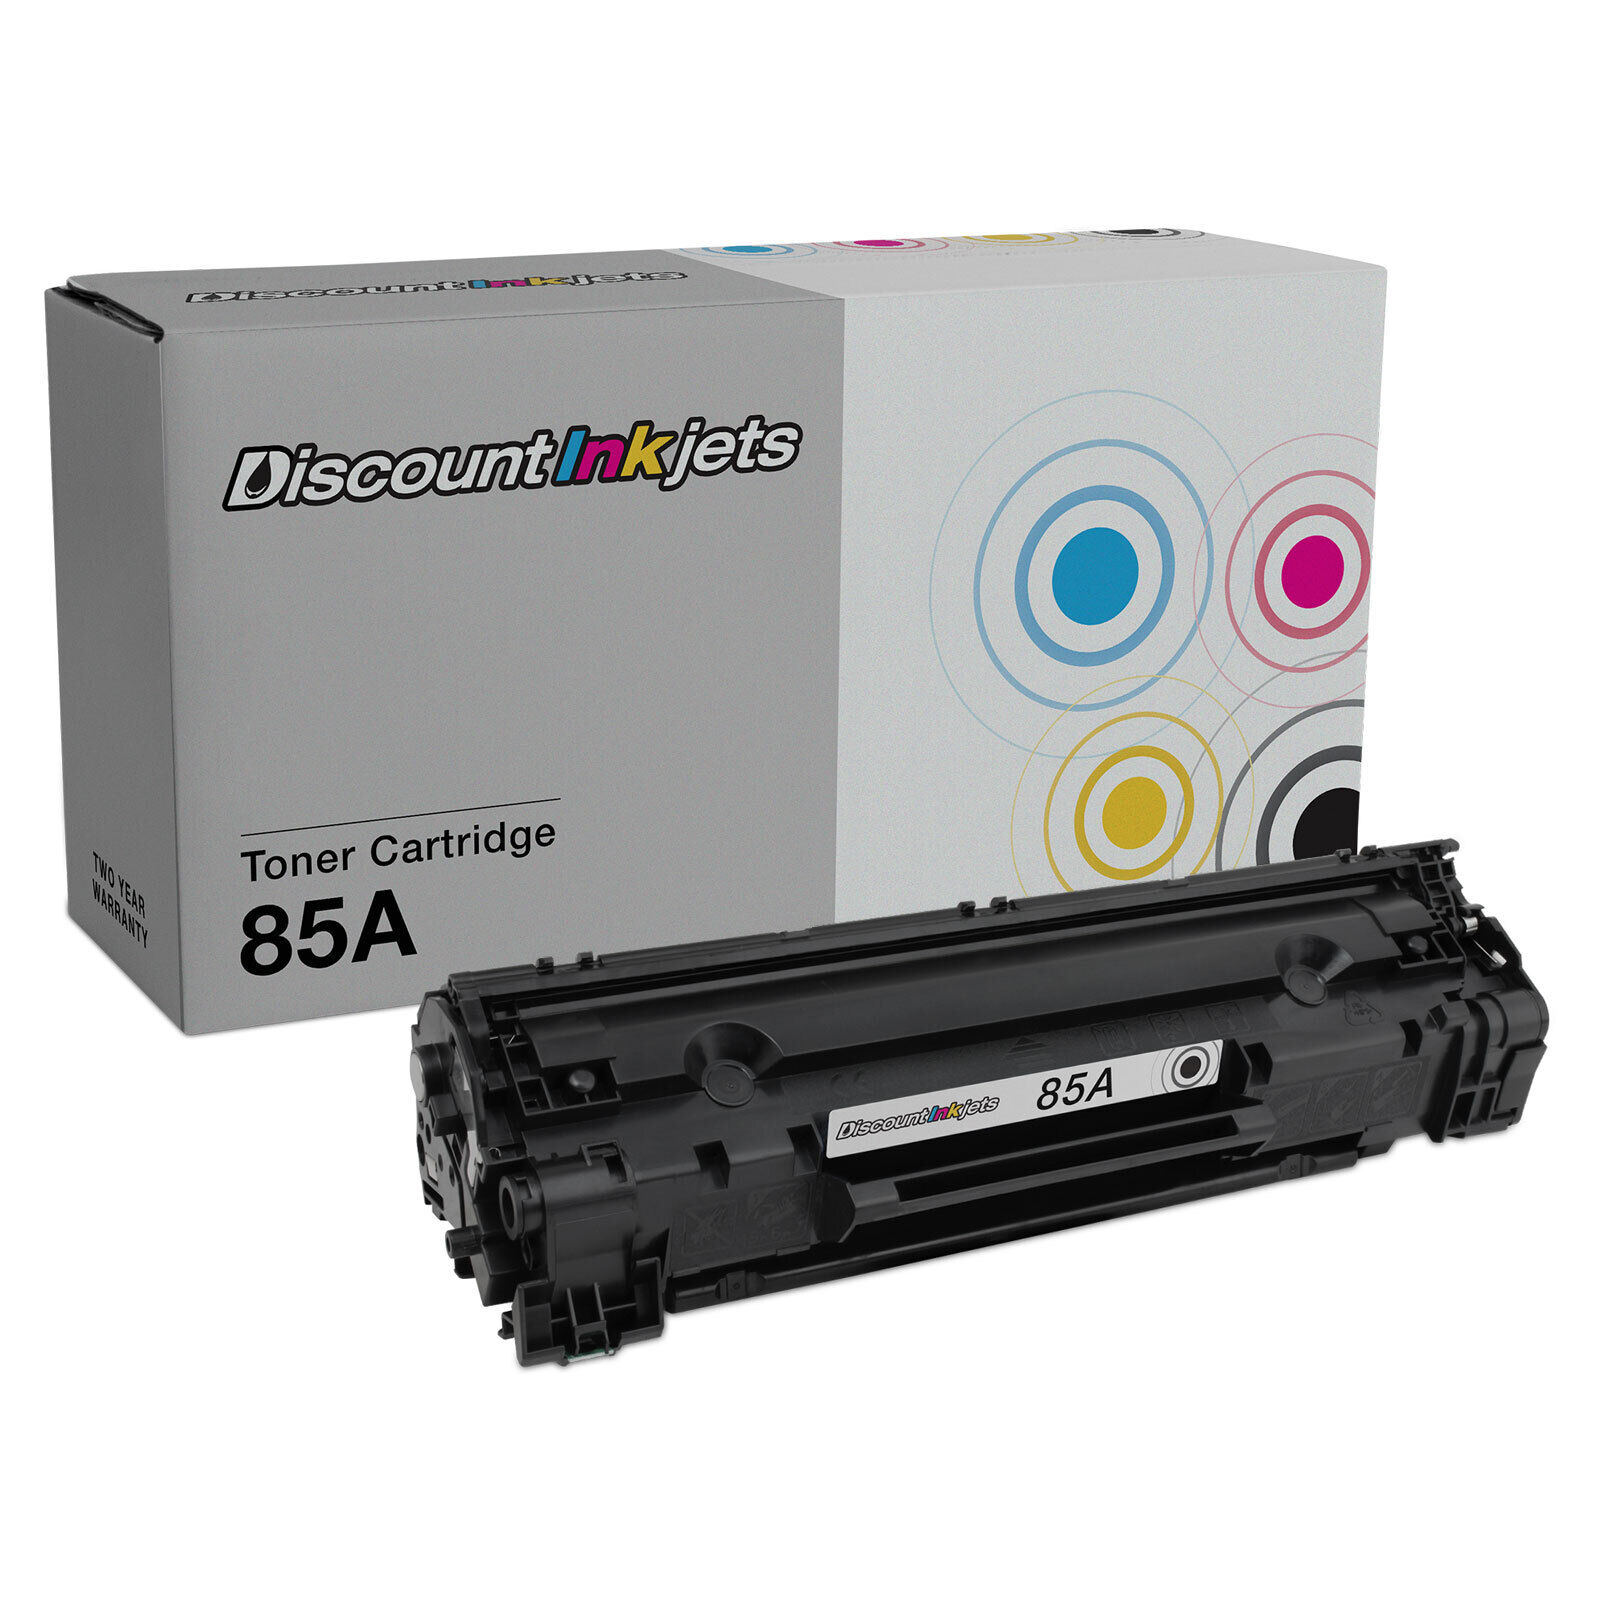 Comp CE285A For HP 85A Toner Cartridge LaserJet P1102w 1102w P1102 M1212nf P1006